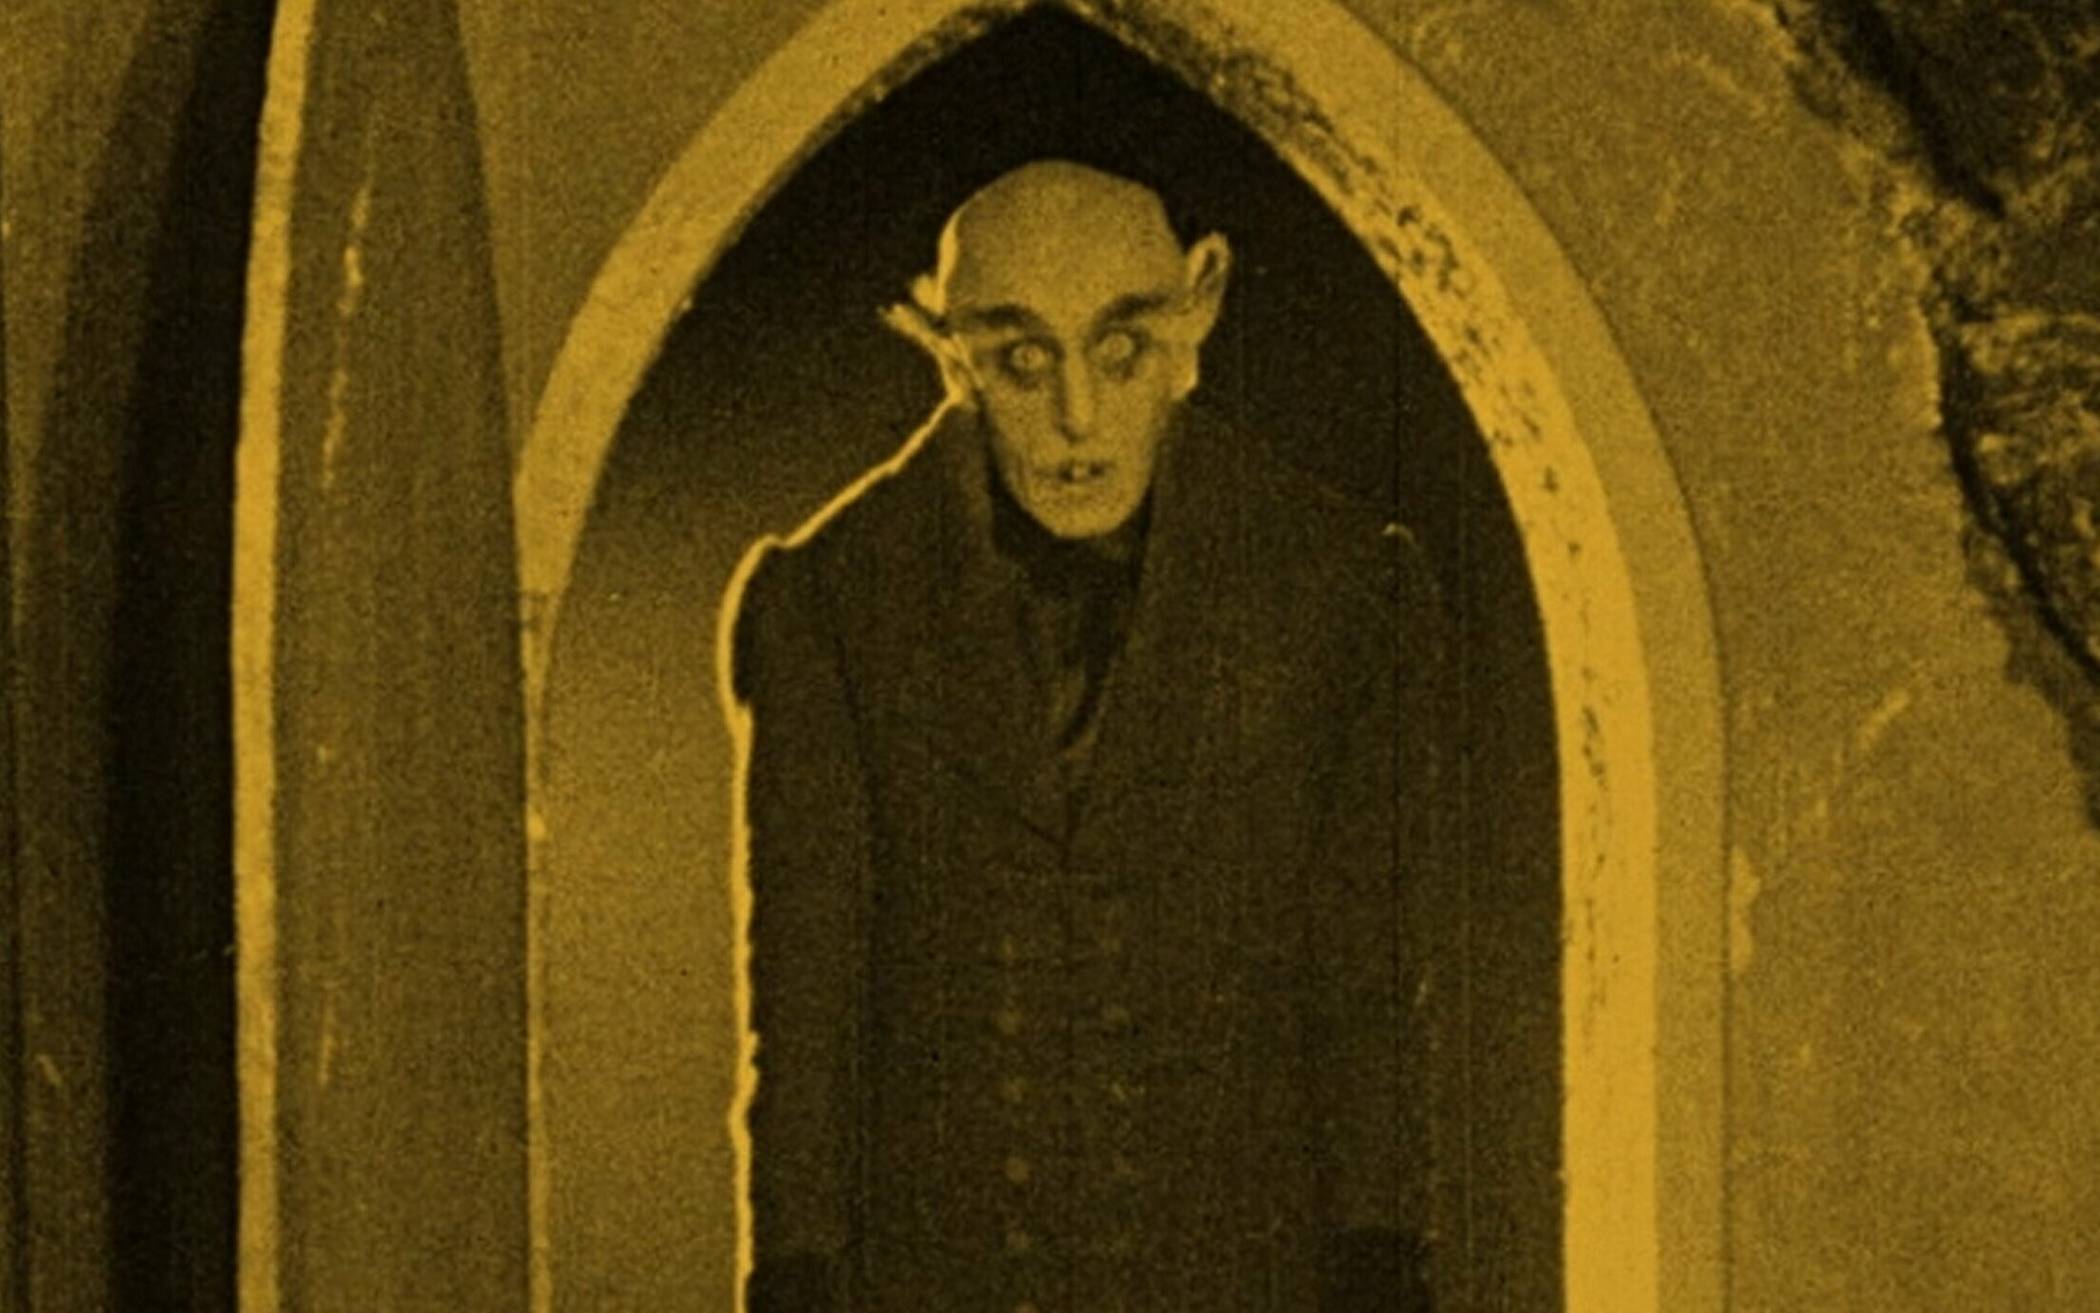  Szene aus dem Film "Nosferatu" von Friedrich Wilhelm Murnau. 